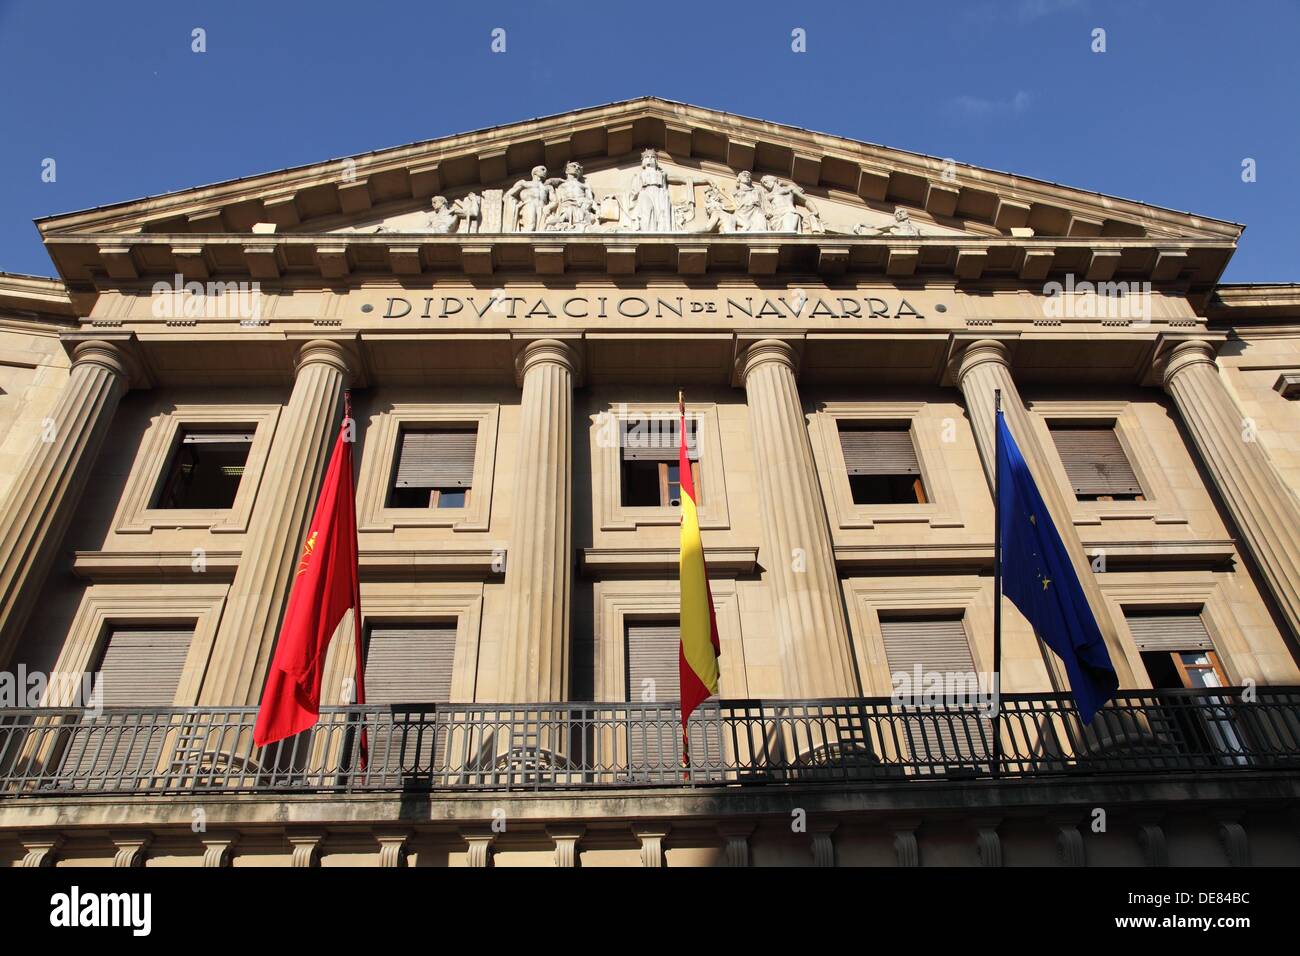 Deputation of Navarra, Pamplona, Spain, European Stock Photo